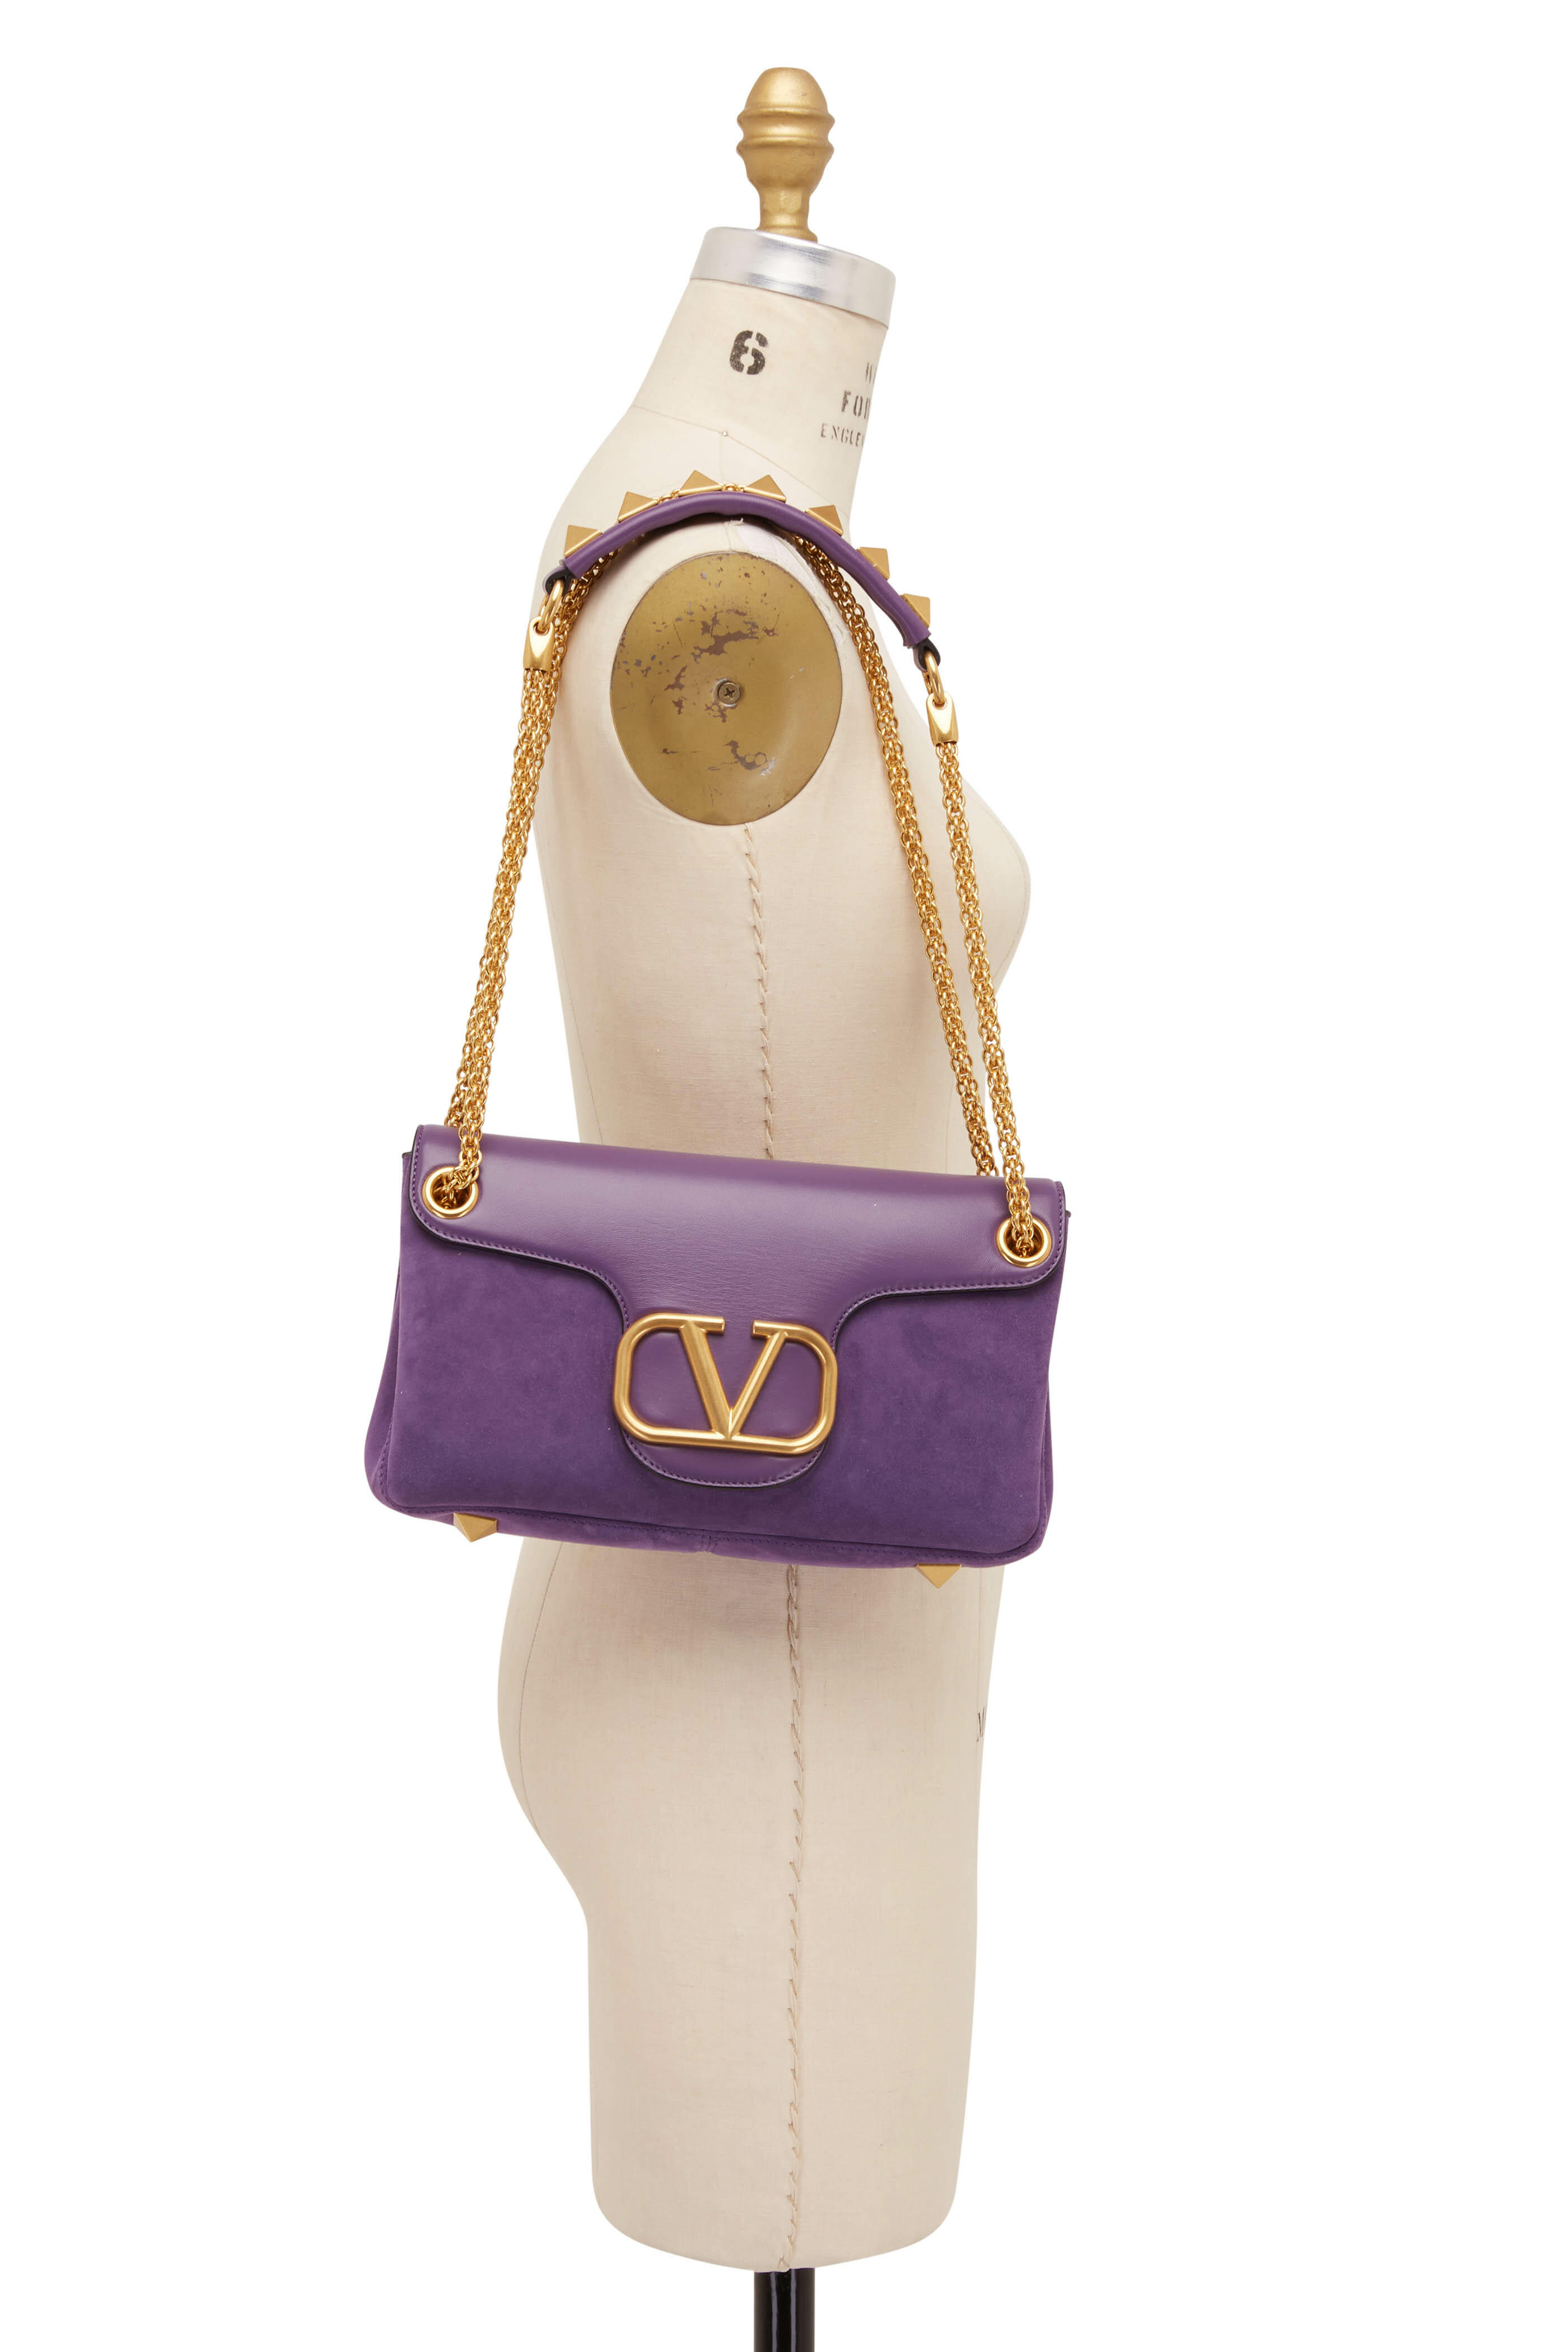 Valentino Garavani Women's Rockstud Small Leather Shoulder Bag - Rose Violet